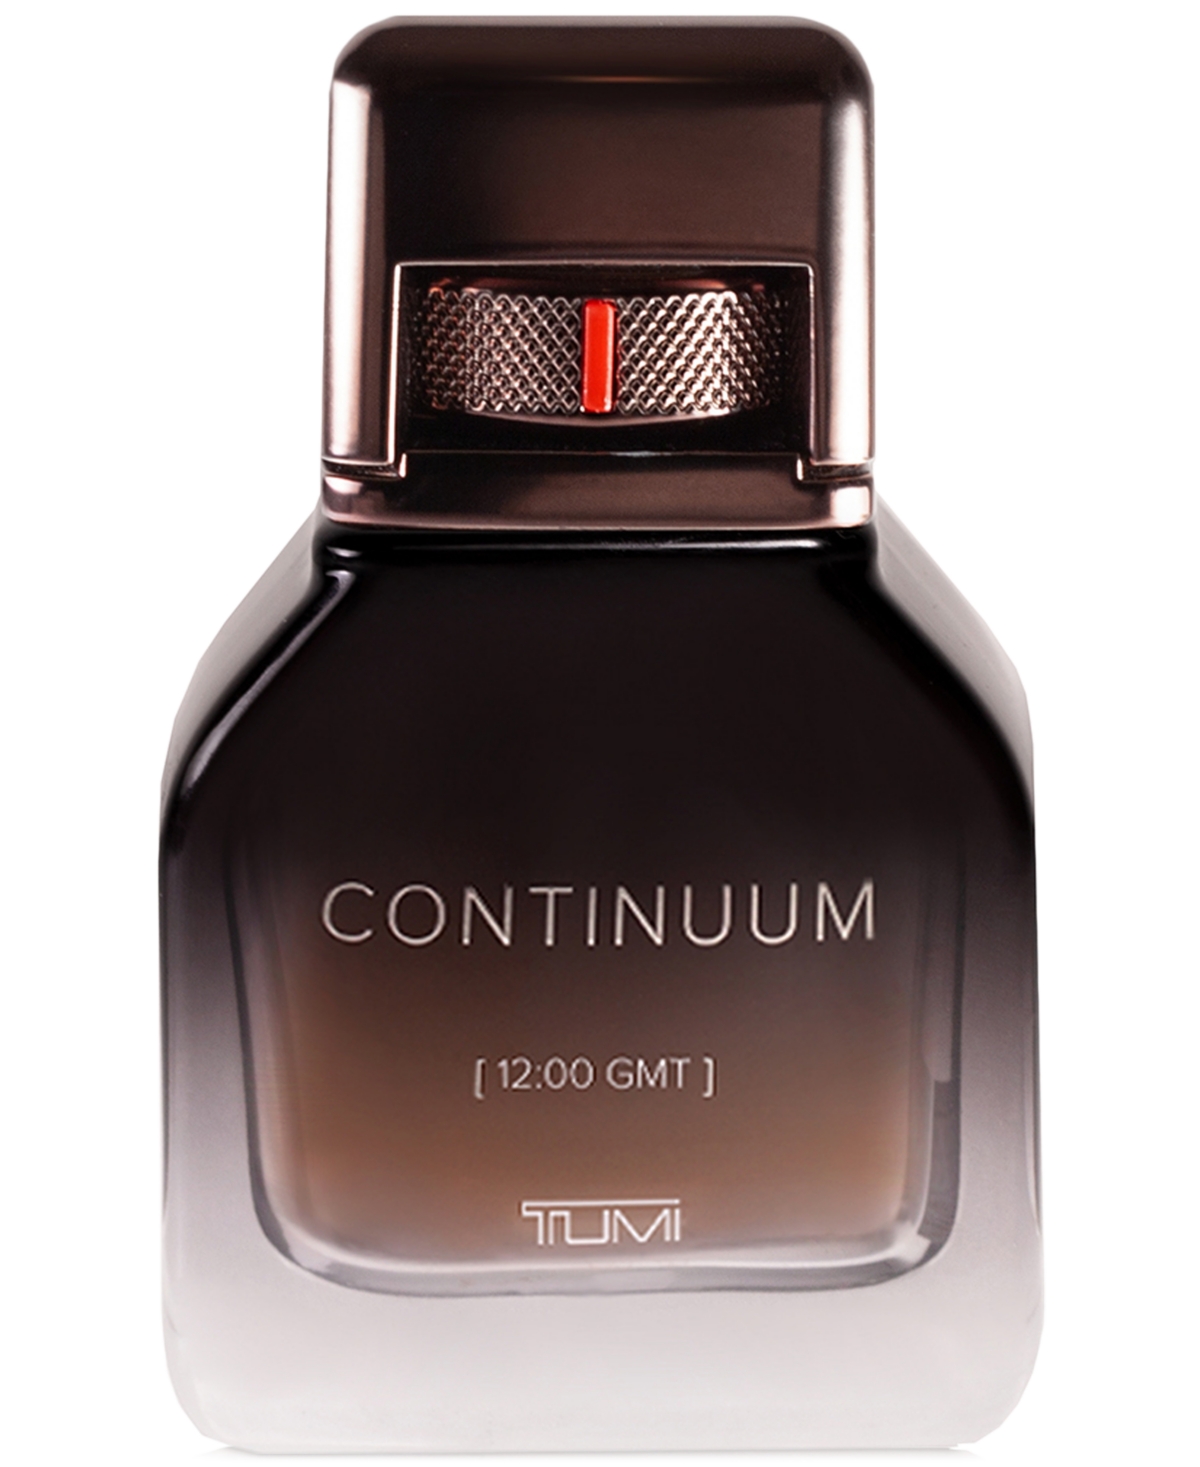 Continuum [12:00 Gmt] Tumi Eau de Parfum Spray, 1.7 oz.